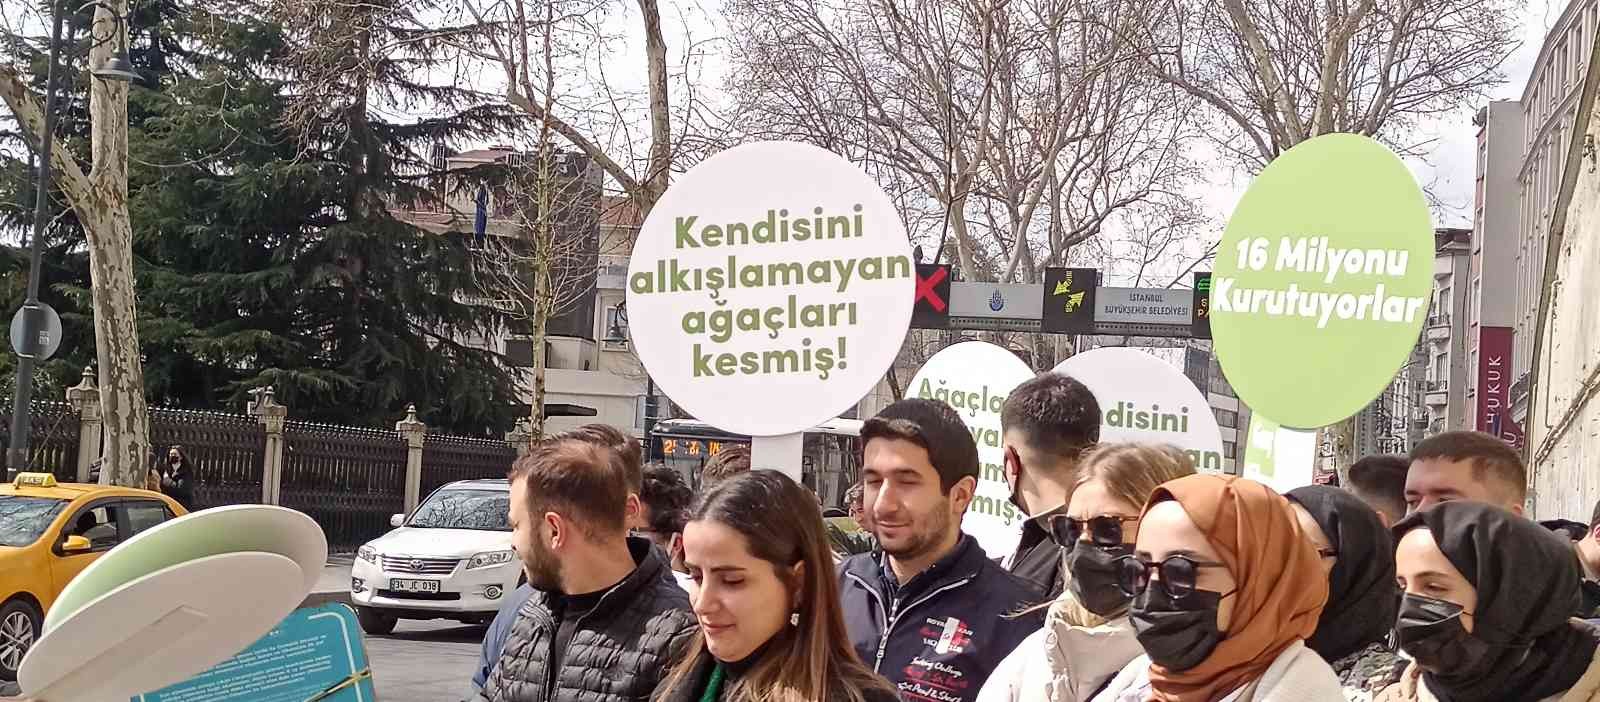 Beşiktaş’ta 112 çınar ağacının İstanbul Büyükşehir Belediyesi (İBB) tarafından kesilmesi üzerine Mimari ve Şehircilik Platformu tarafından ...